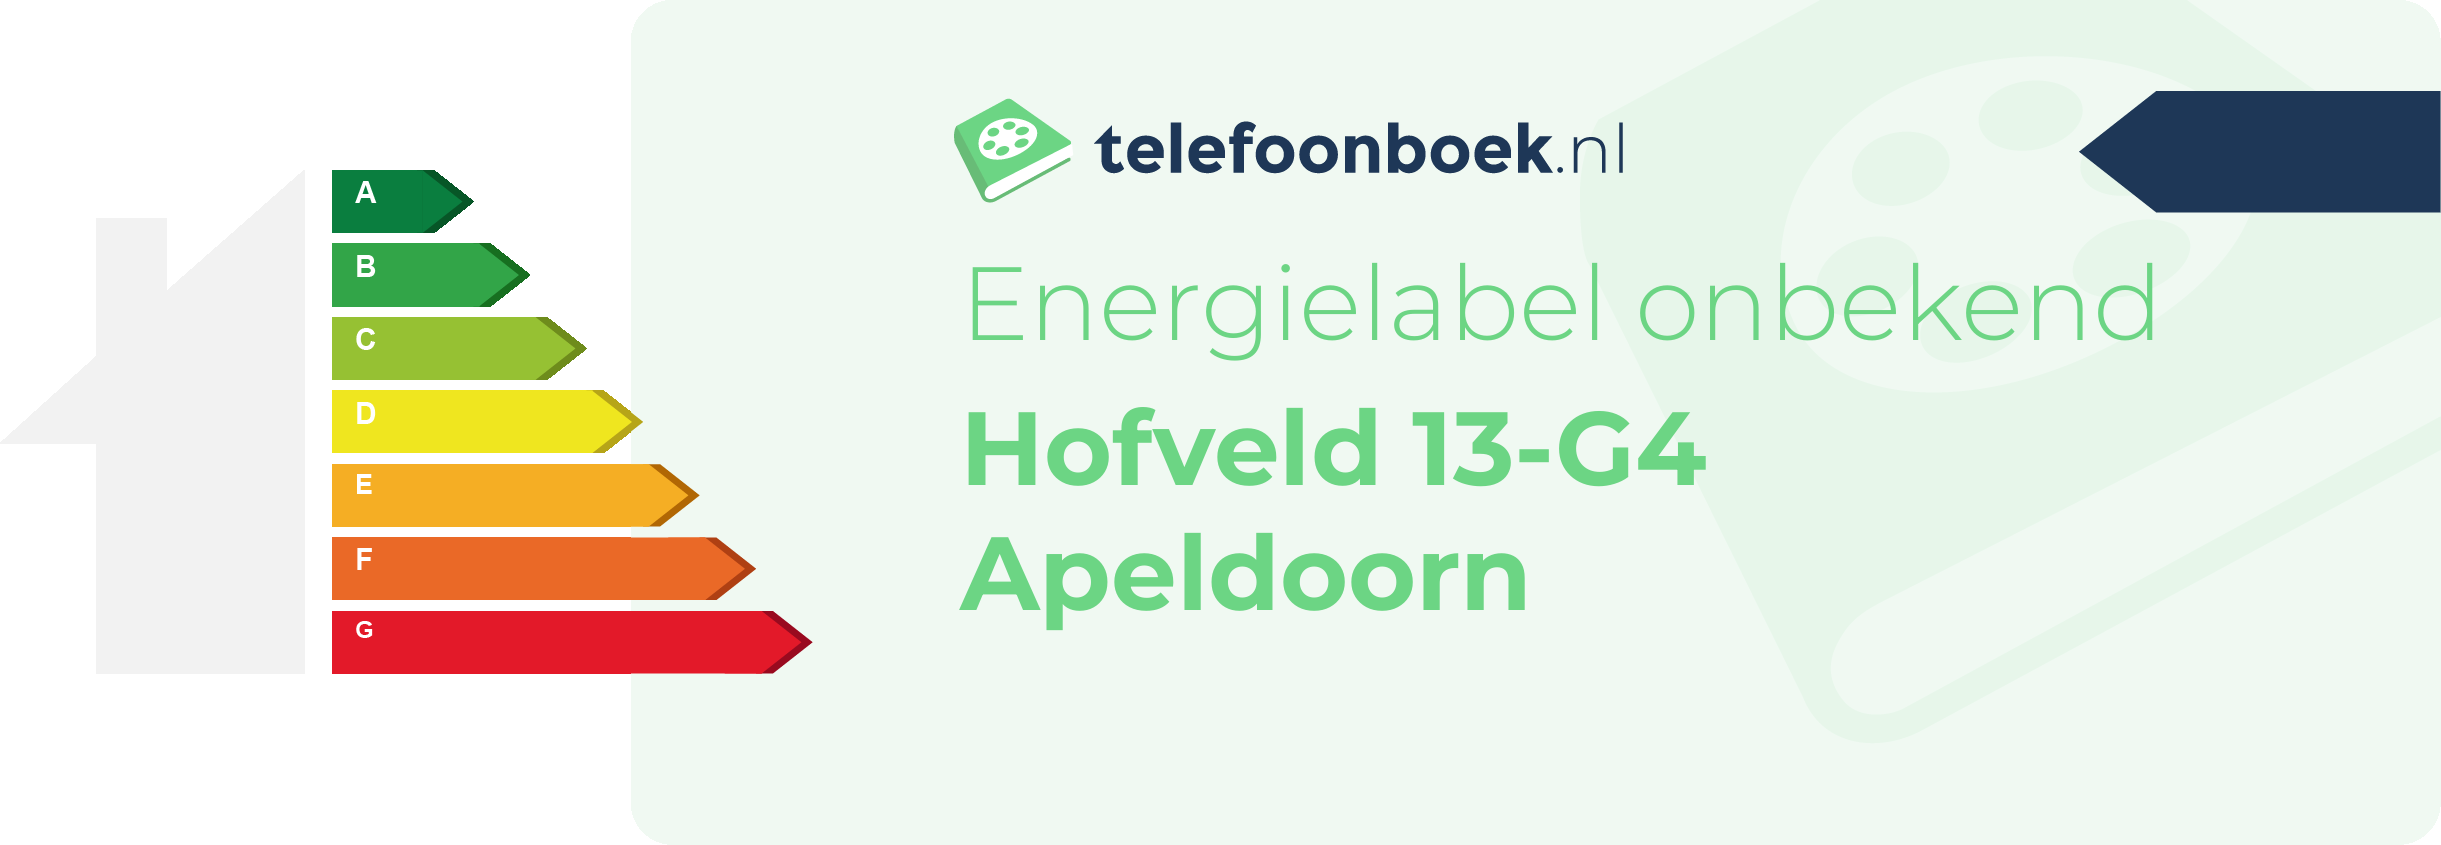 Energielabel Hofveld 13-G4 Apeldoorn